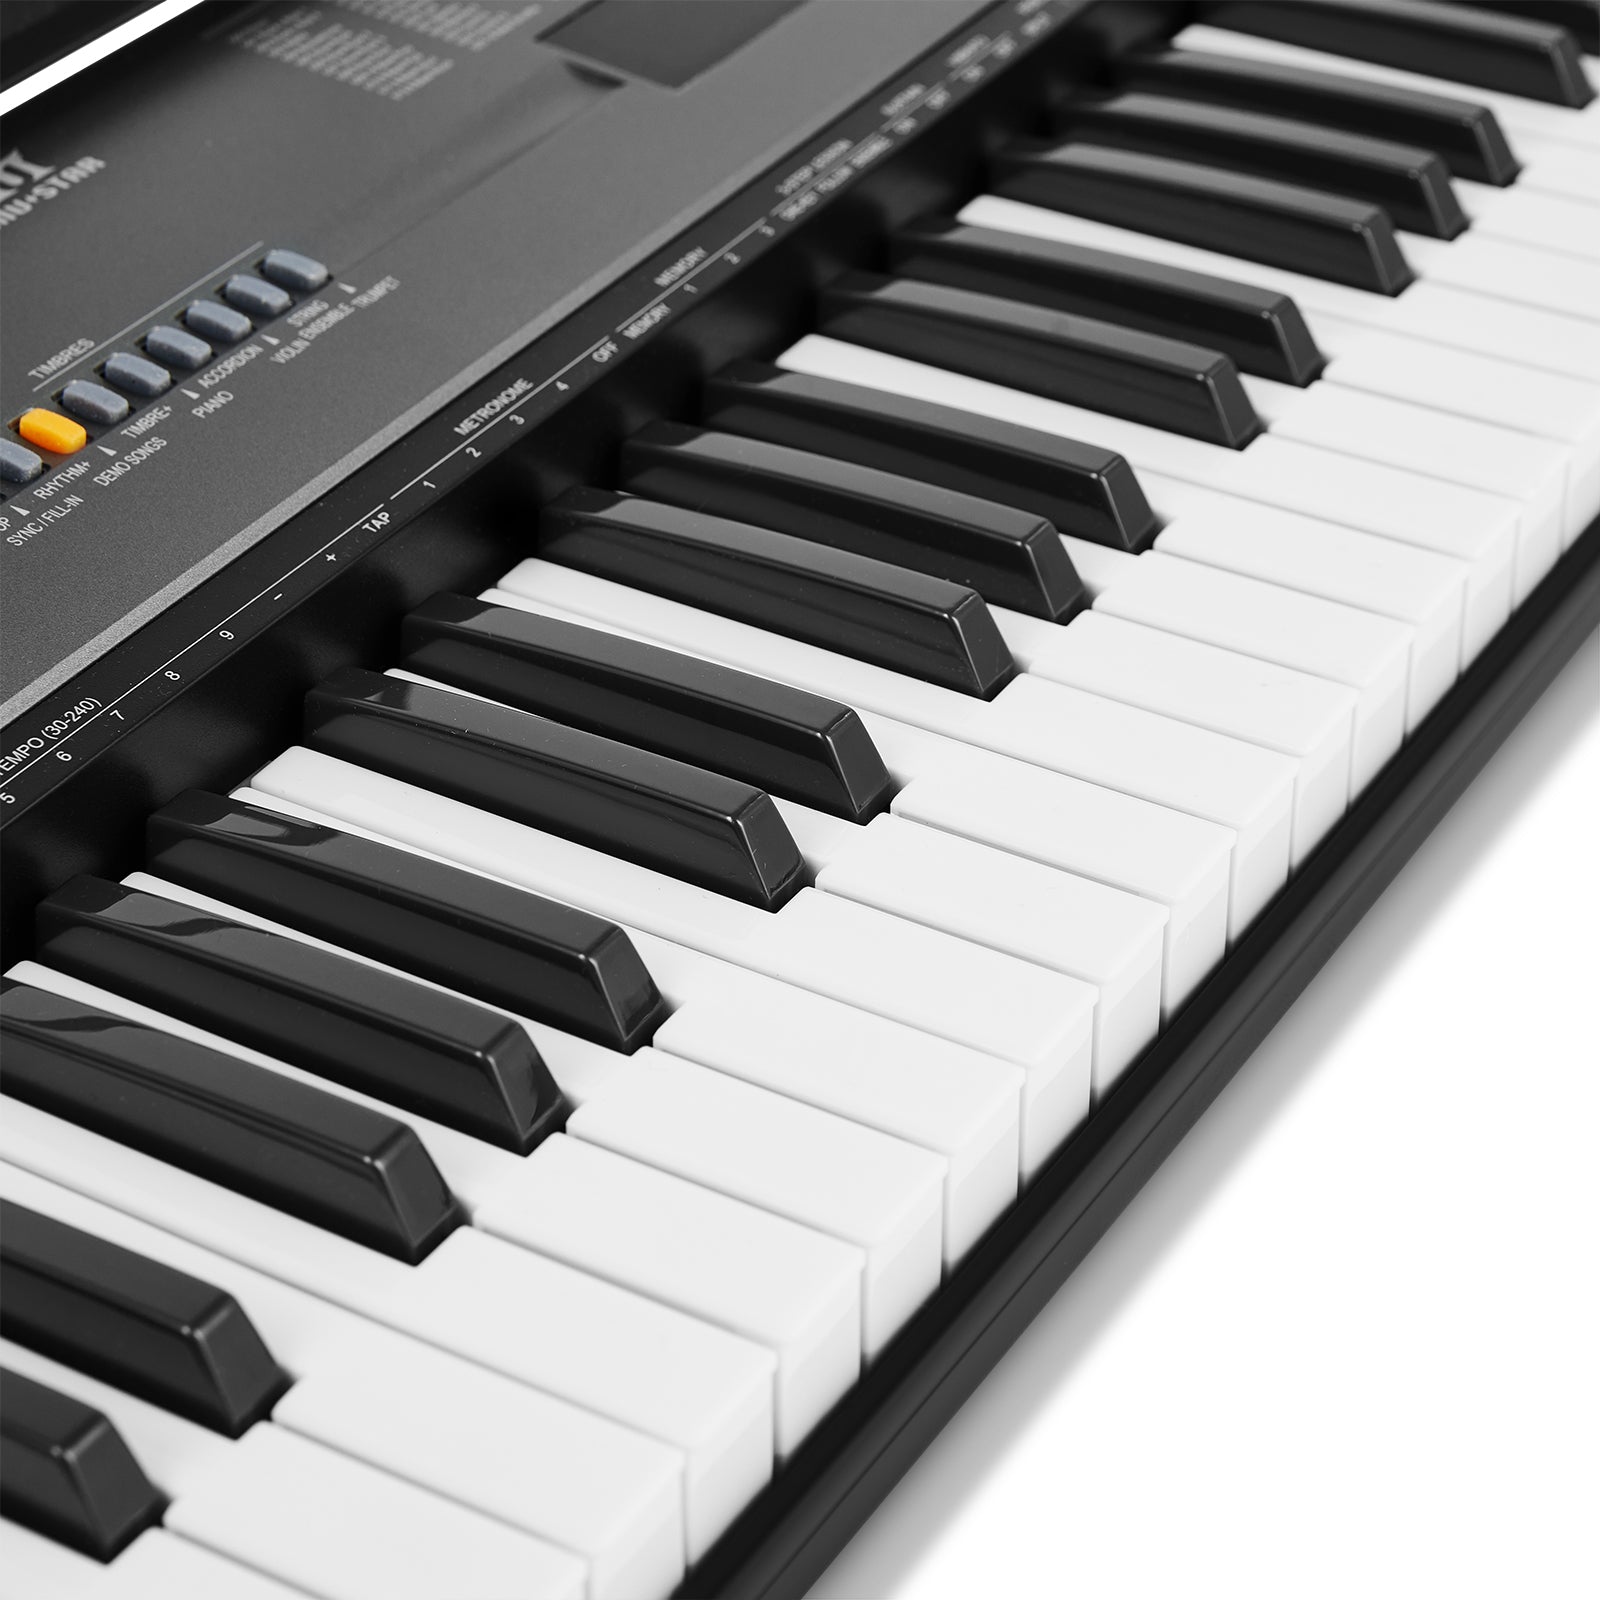 MUSTAR MEK-600, Piano Keyboard, 61 Key Touch Sensitive Keyboard, Elect